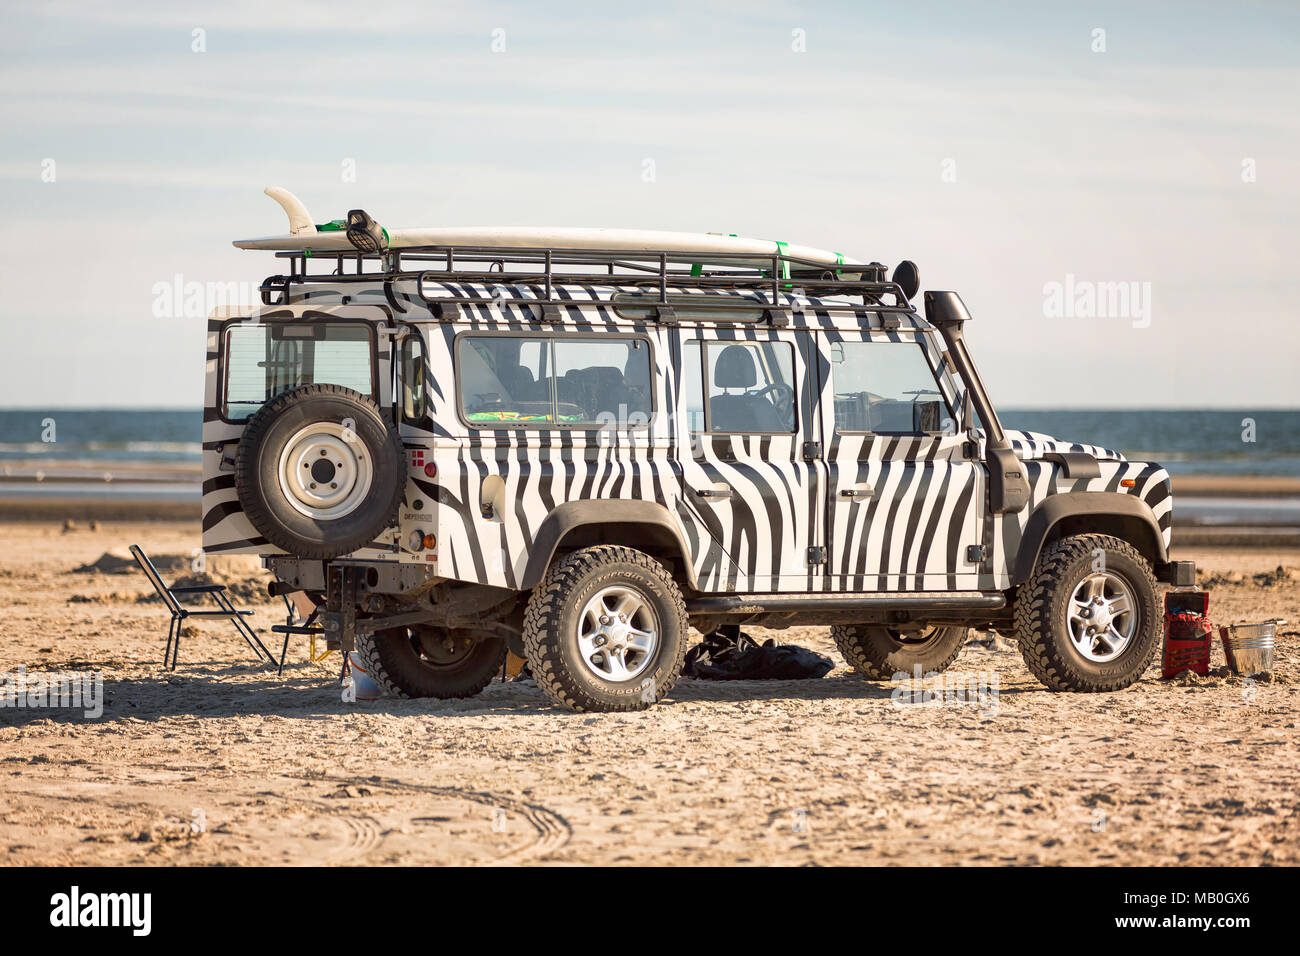 Land Rover presso la spiaggia dell'isola danese Fanoe Foto Stock